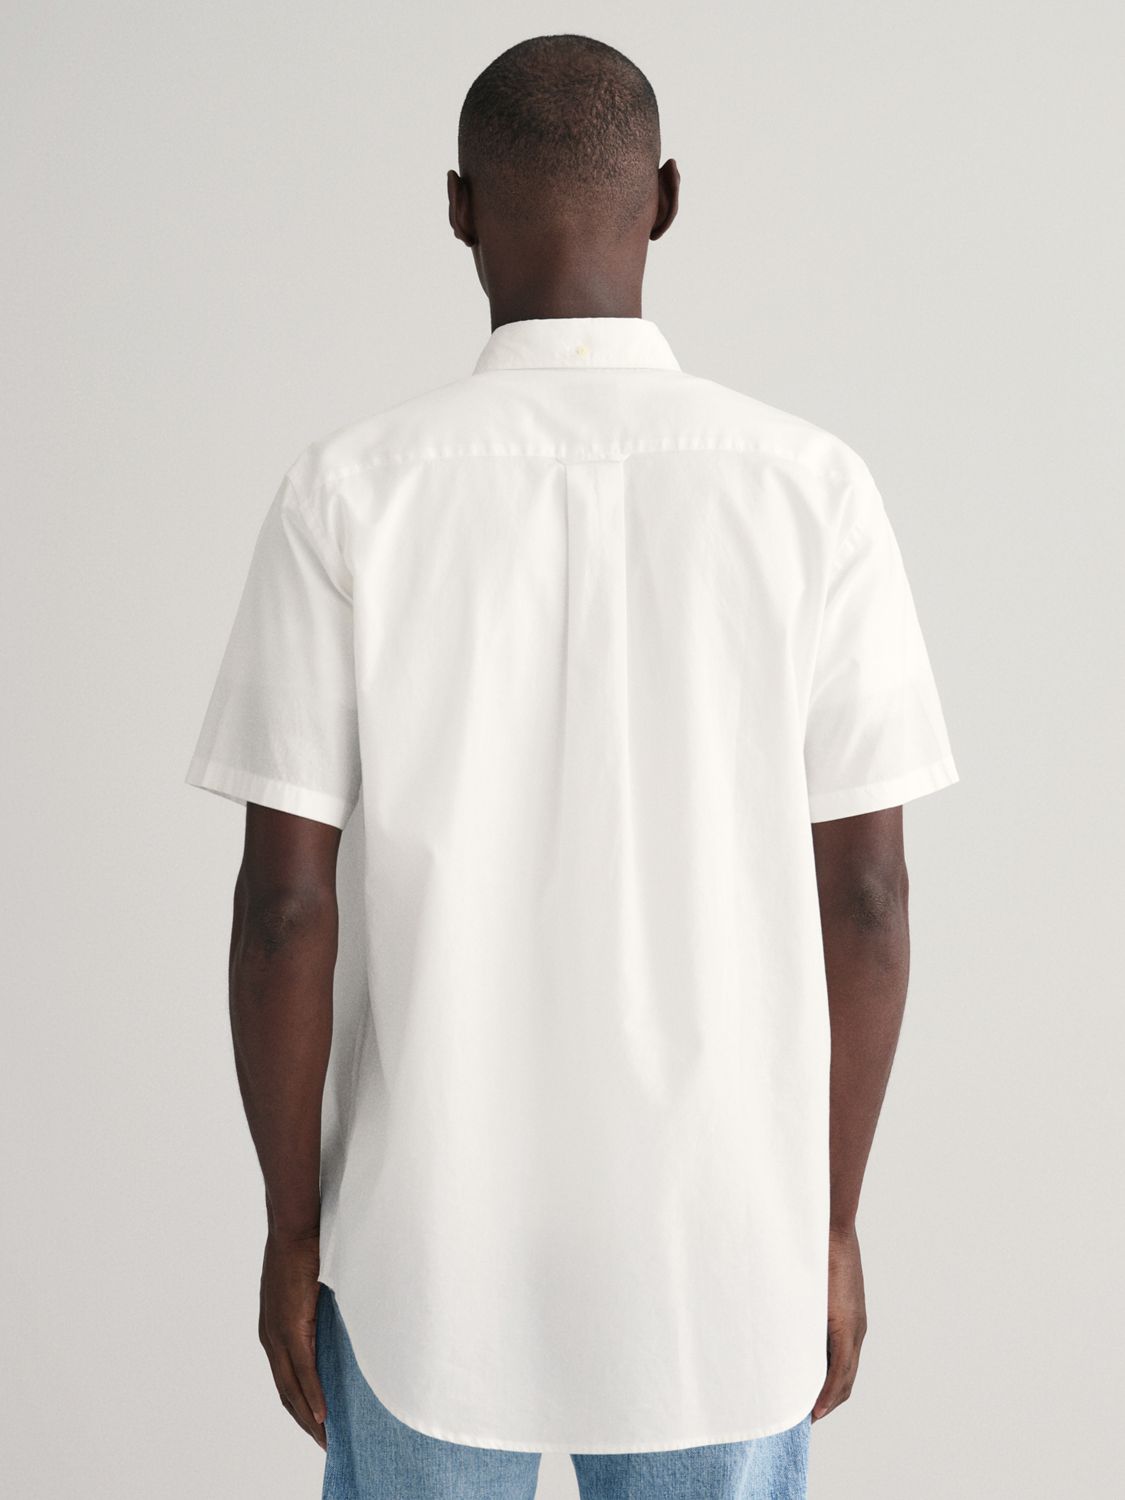 GANT Regular Fit Linen Blend Shirt, White, M